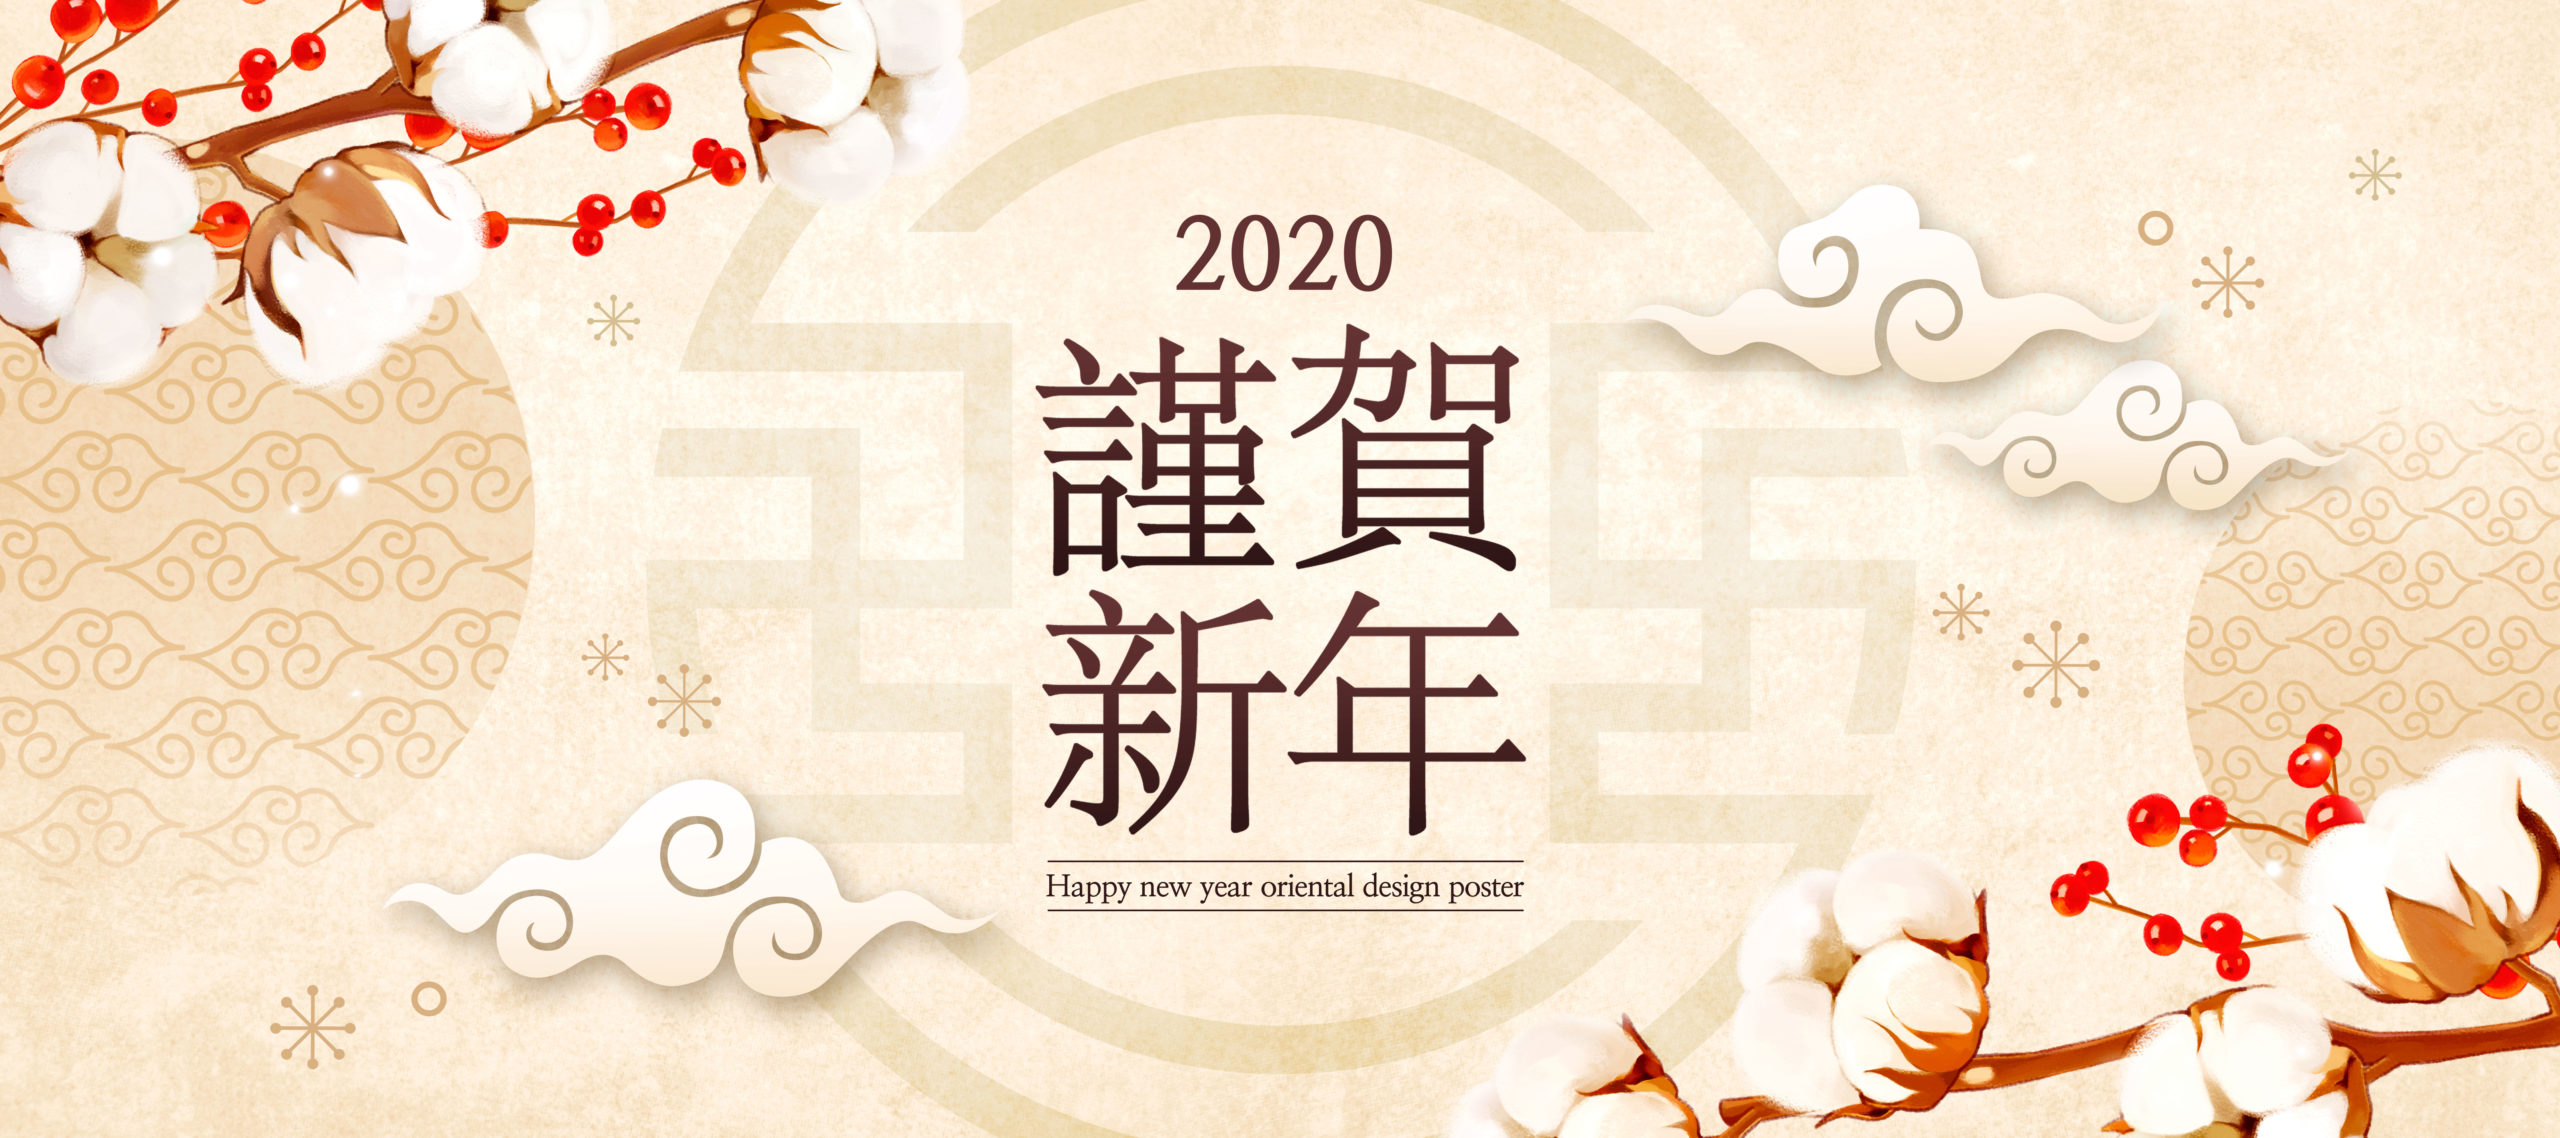 2020恭贺新春新年主题Banner图设计模板插图